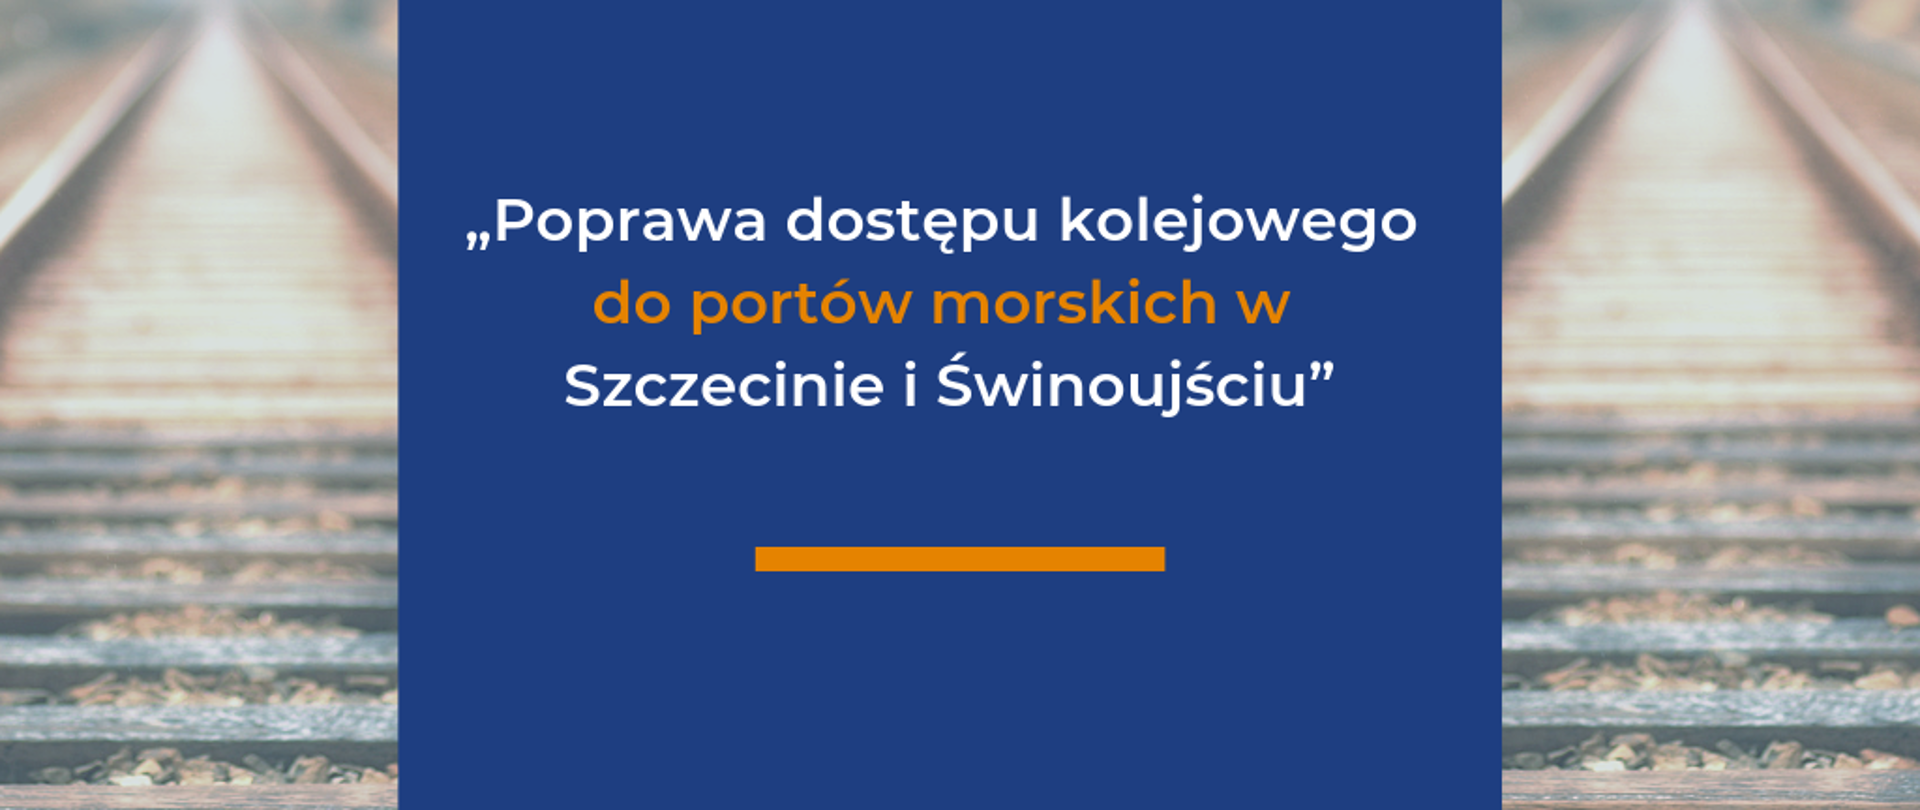 Grafika z napisem "Poprawa dostępu kolejowego do portów morskich w Szczecinie i Świnoujściu”